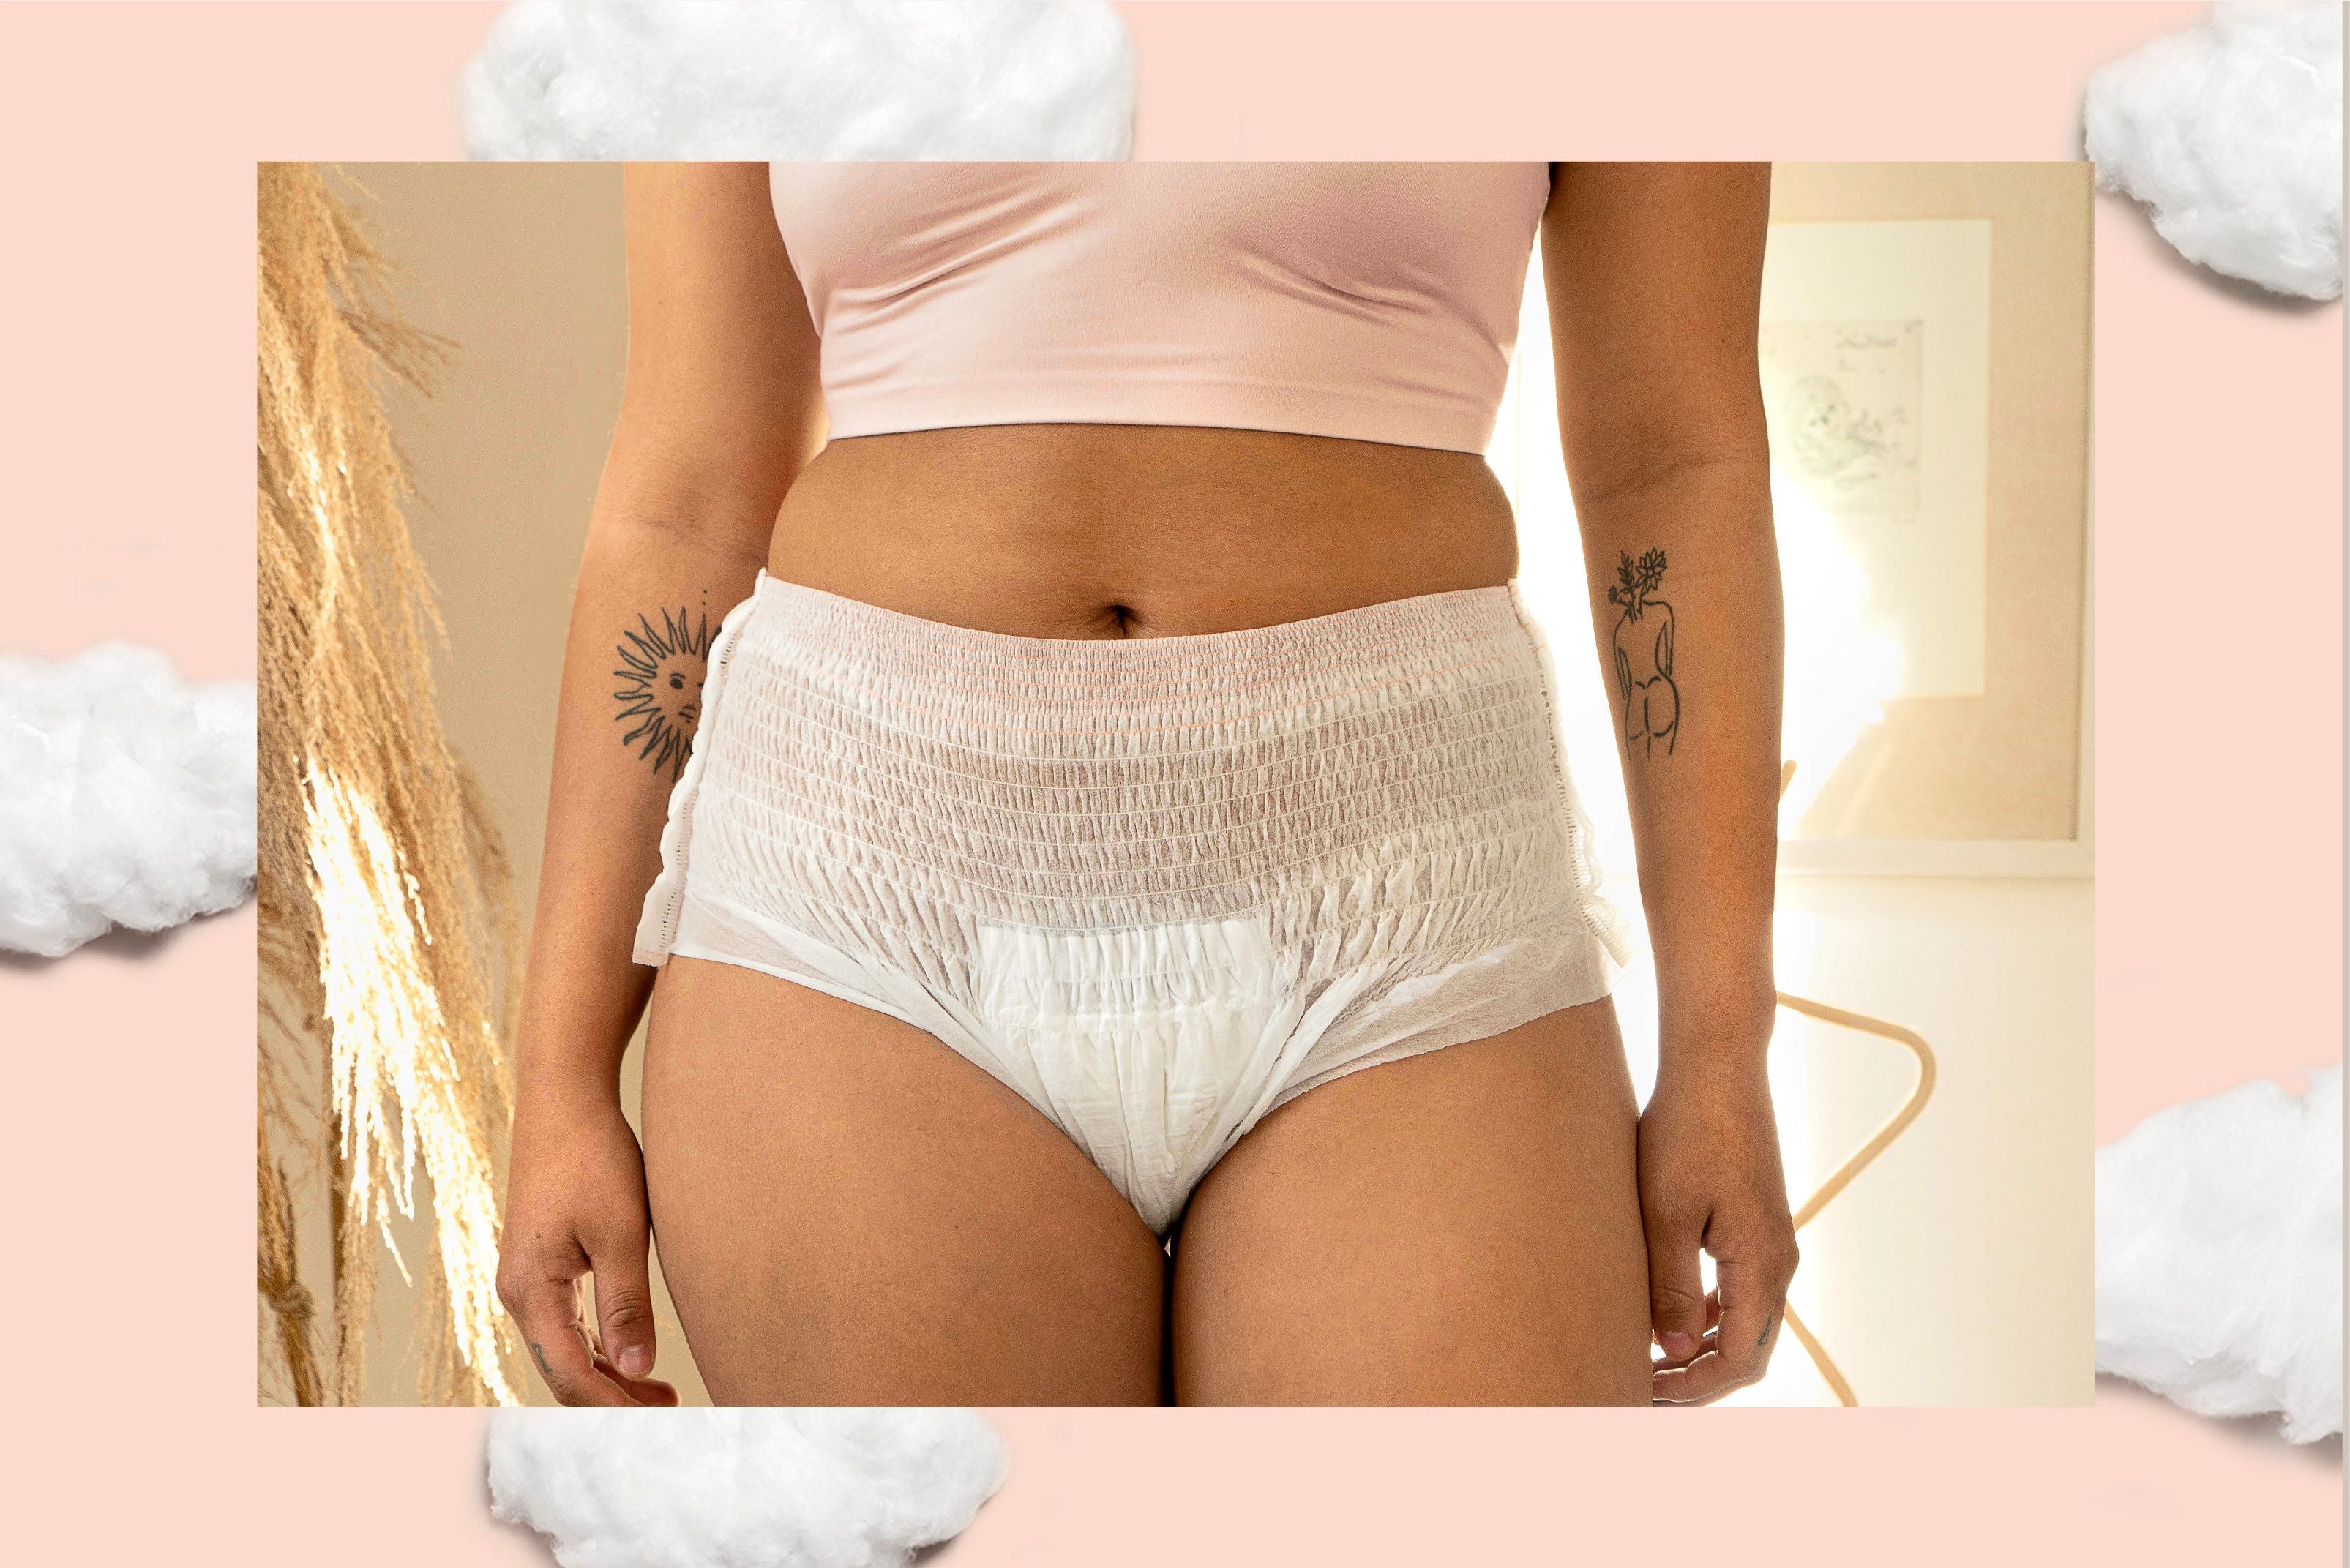 How to Choose the Best Postpartum Underwear